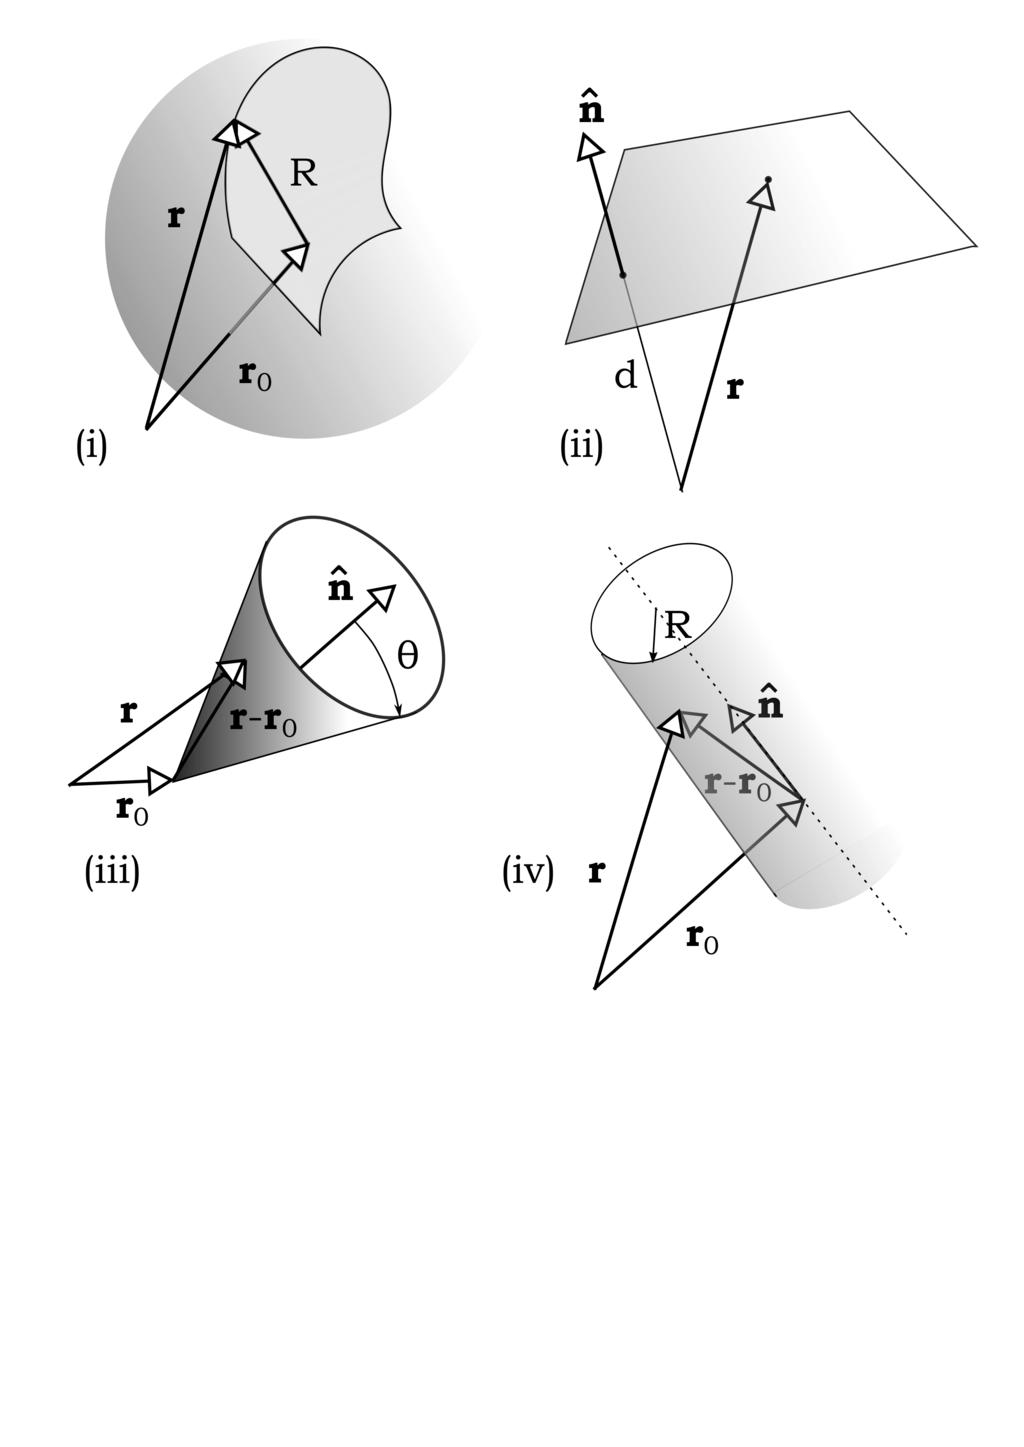 Σχήμα 8: Οι τέσσερεις επιφάνειες, σφαίρα, επίπεδο, κώνος και κύλινδρος σε διανυσματική μορφή.